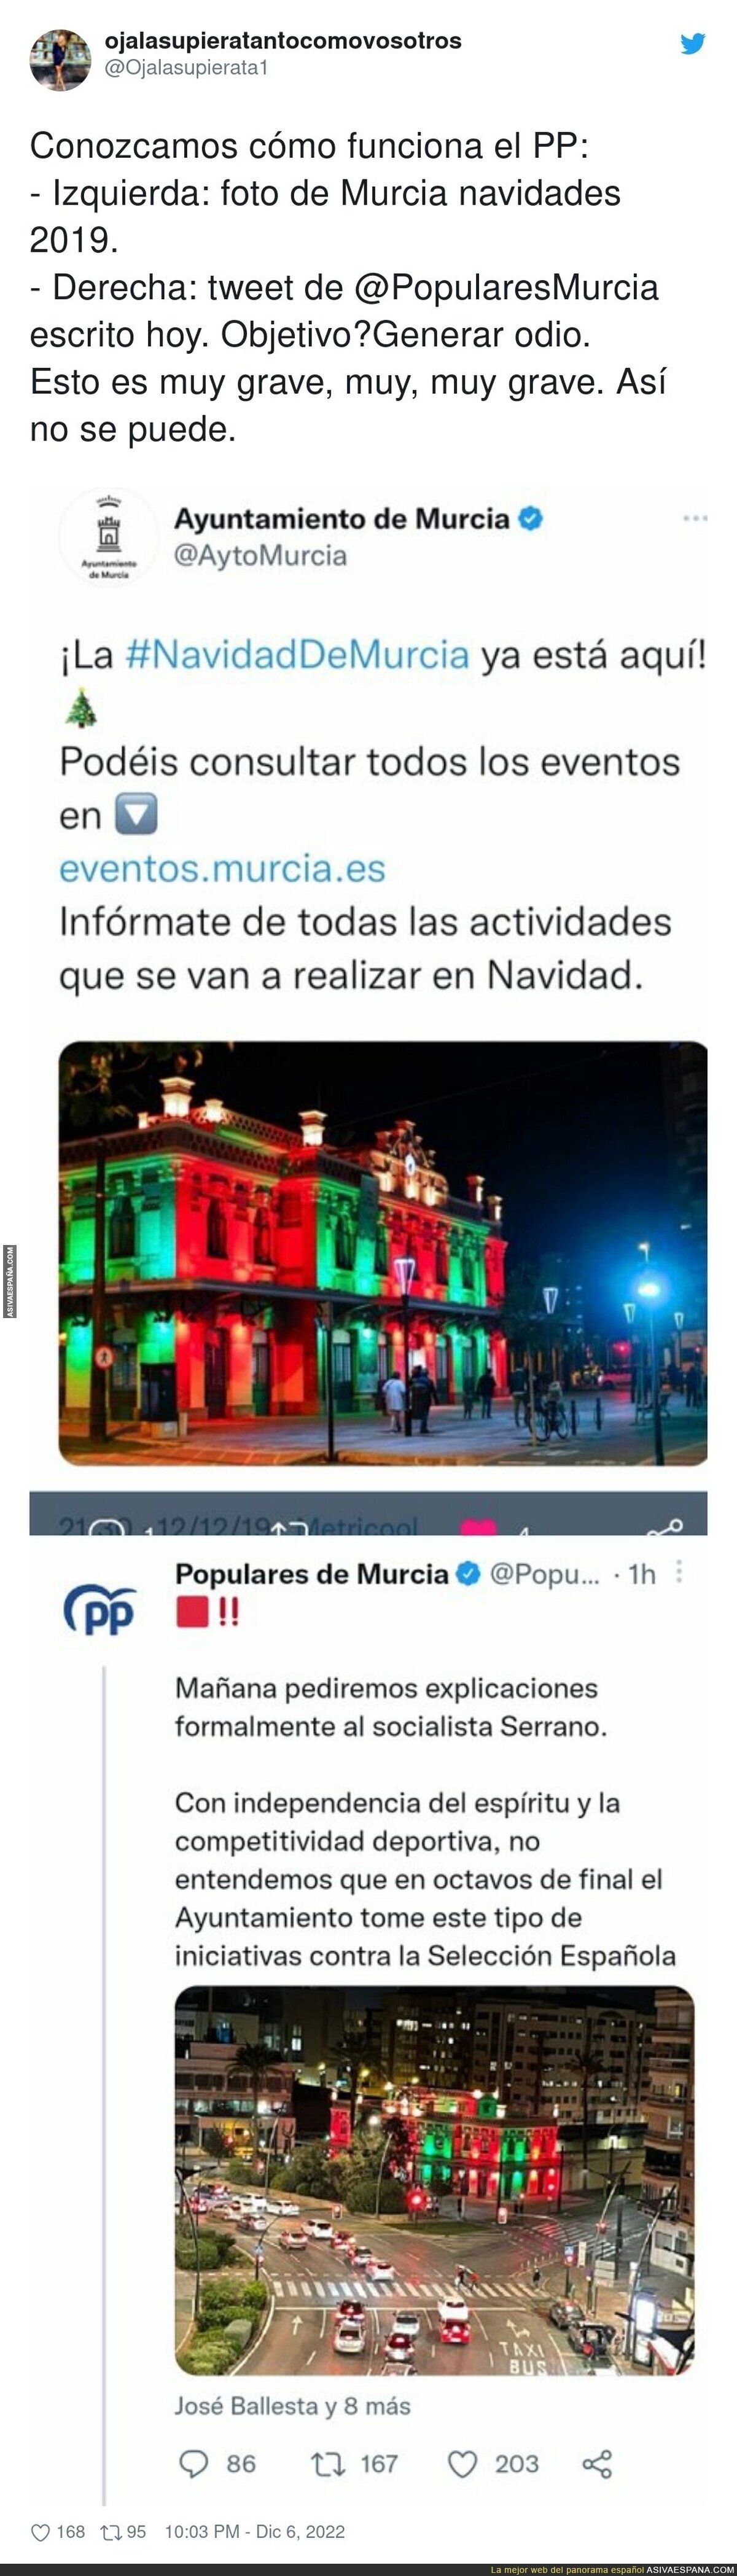 El ridículo extremo del PP en Murcia solamente por generar odio